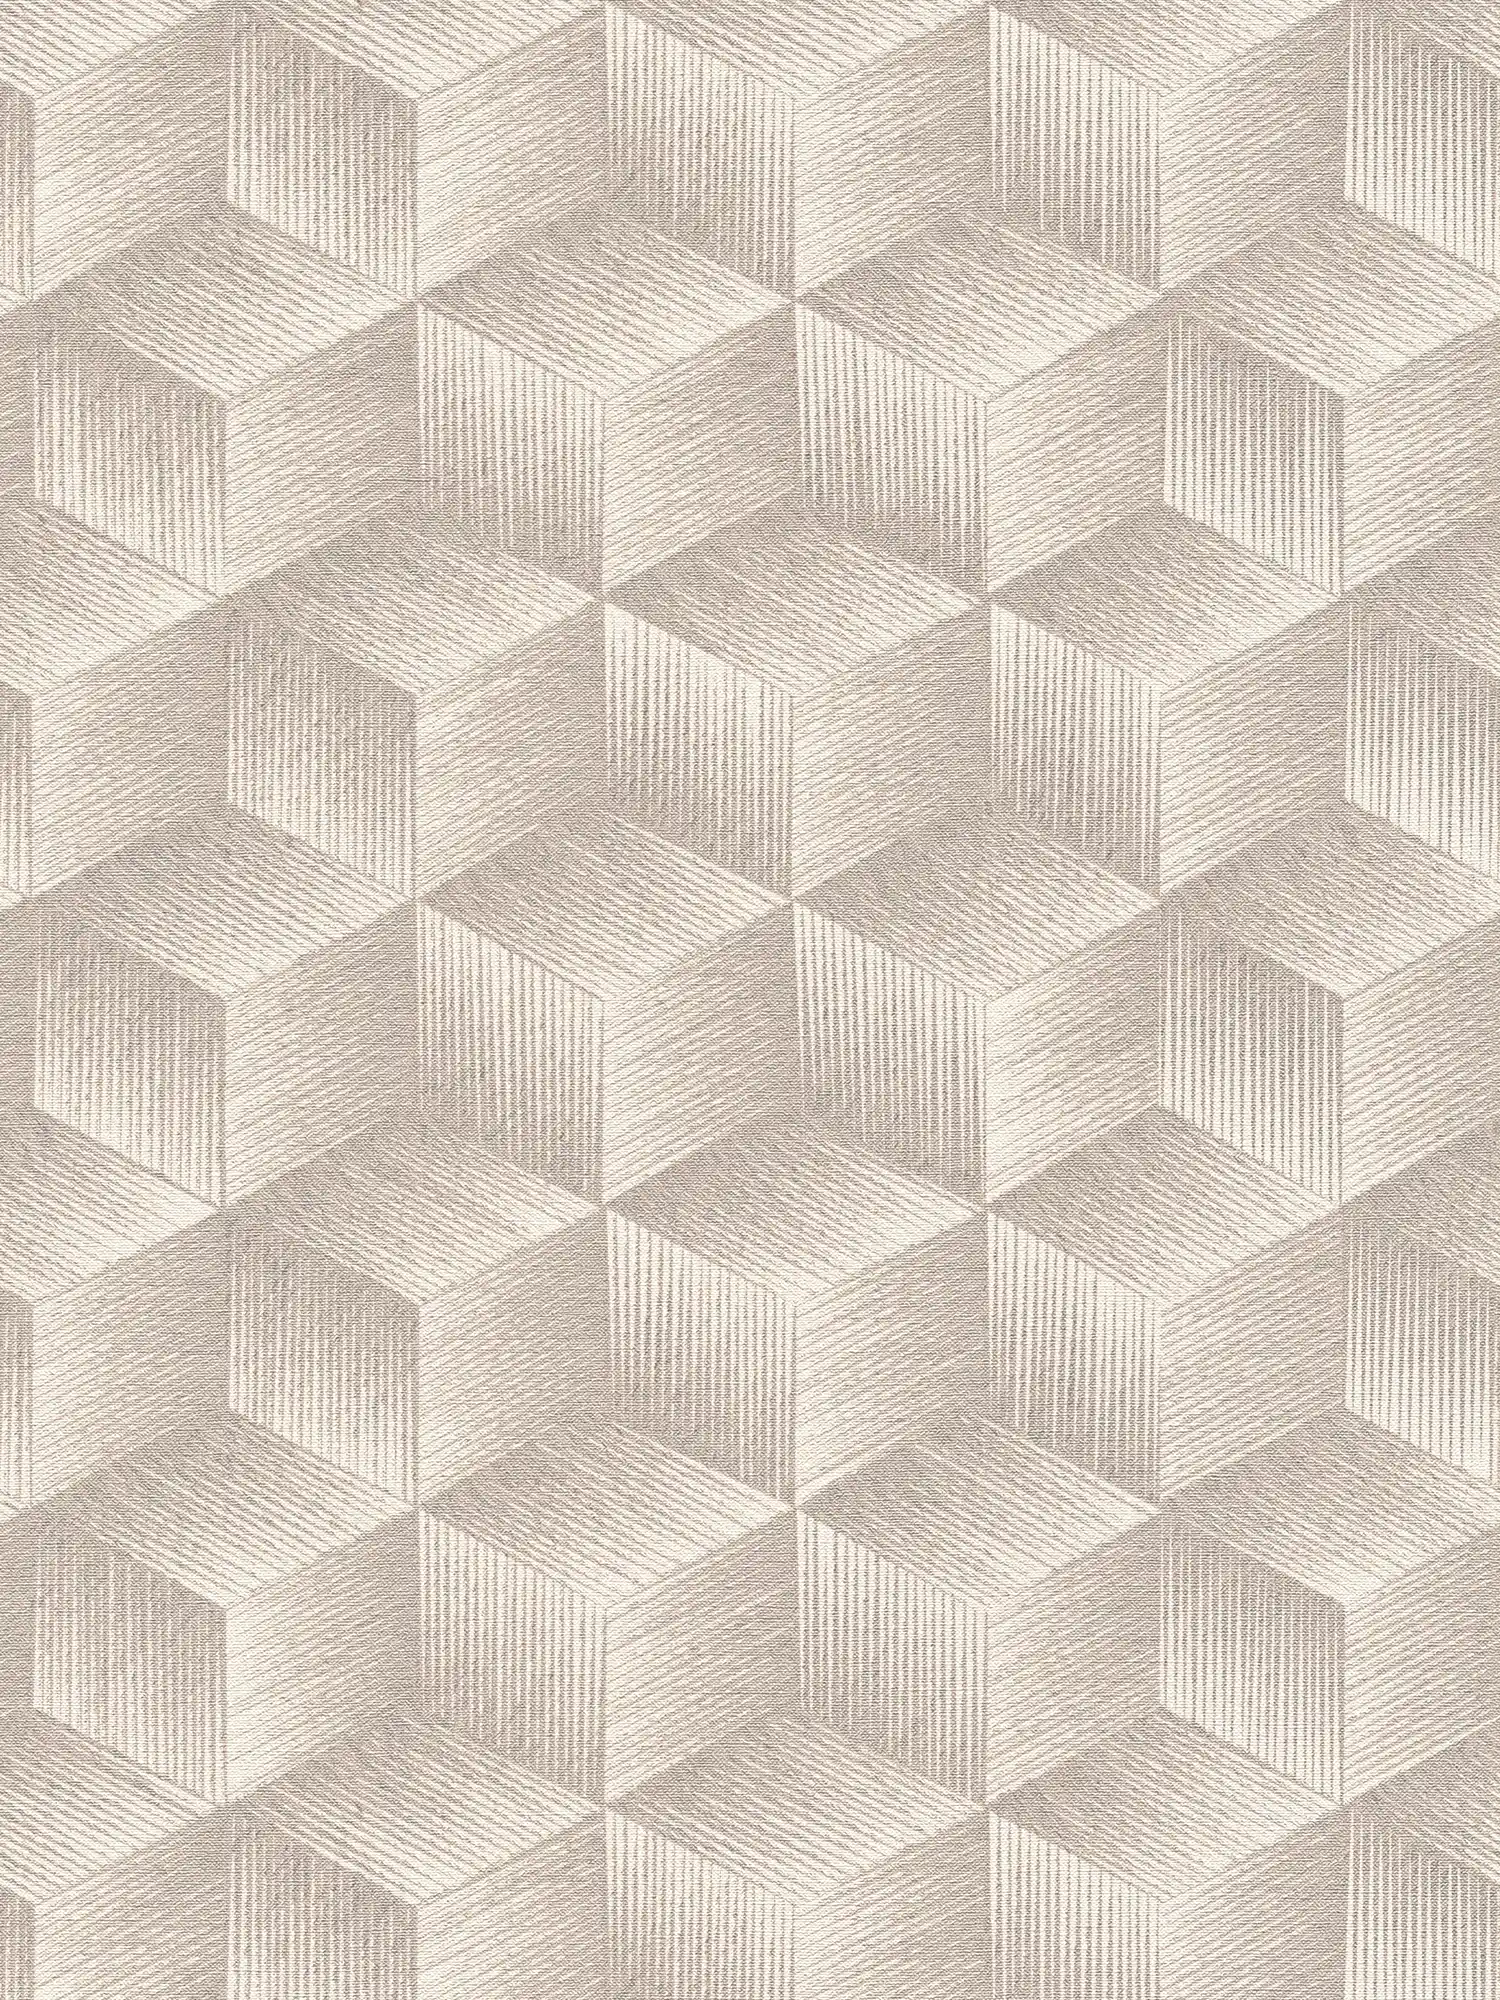 3D-look vliesbehang met vierkant patroon PVC-vrij - grijs, grijsgroen, wit
